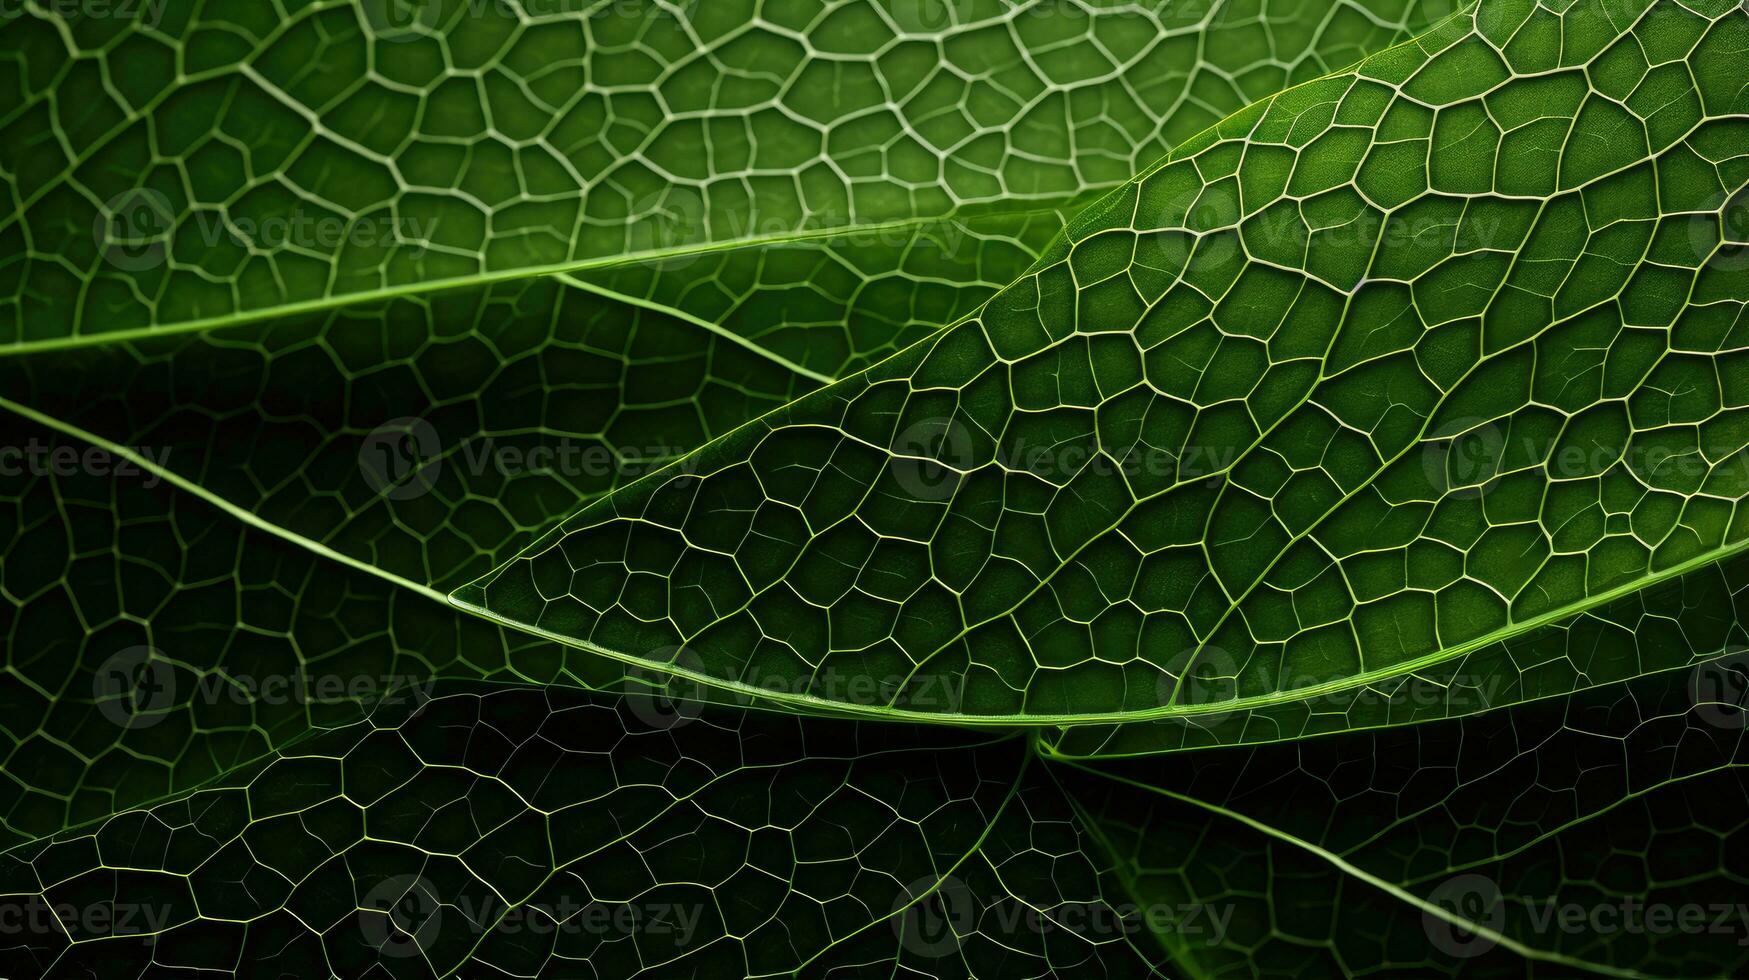 AI generated leaf, leaf texture, close-up angle, macro lens photo